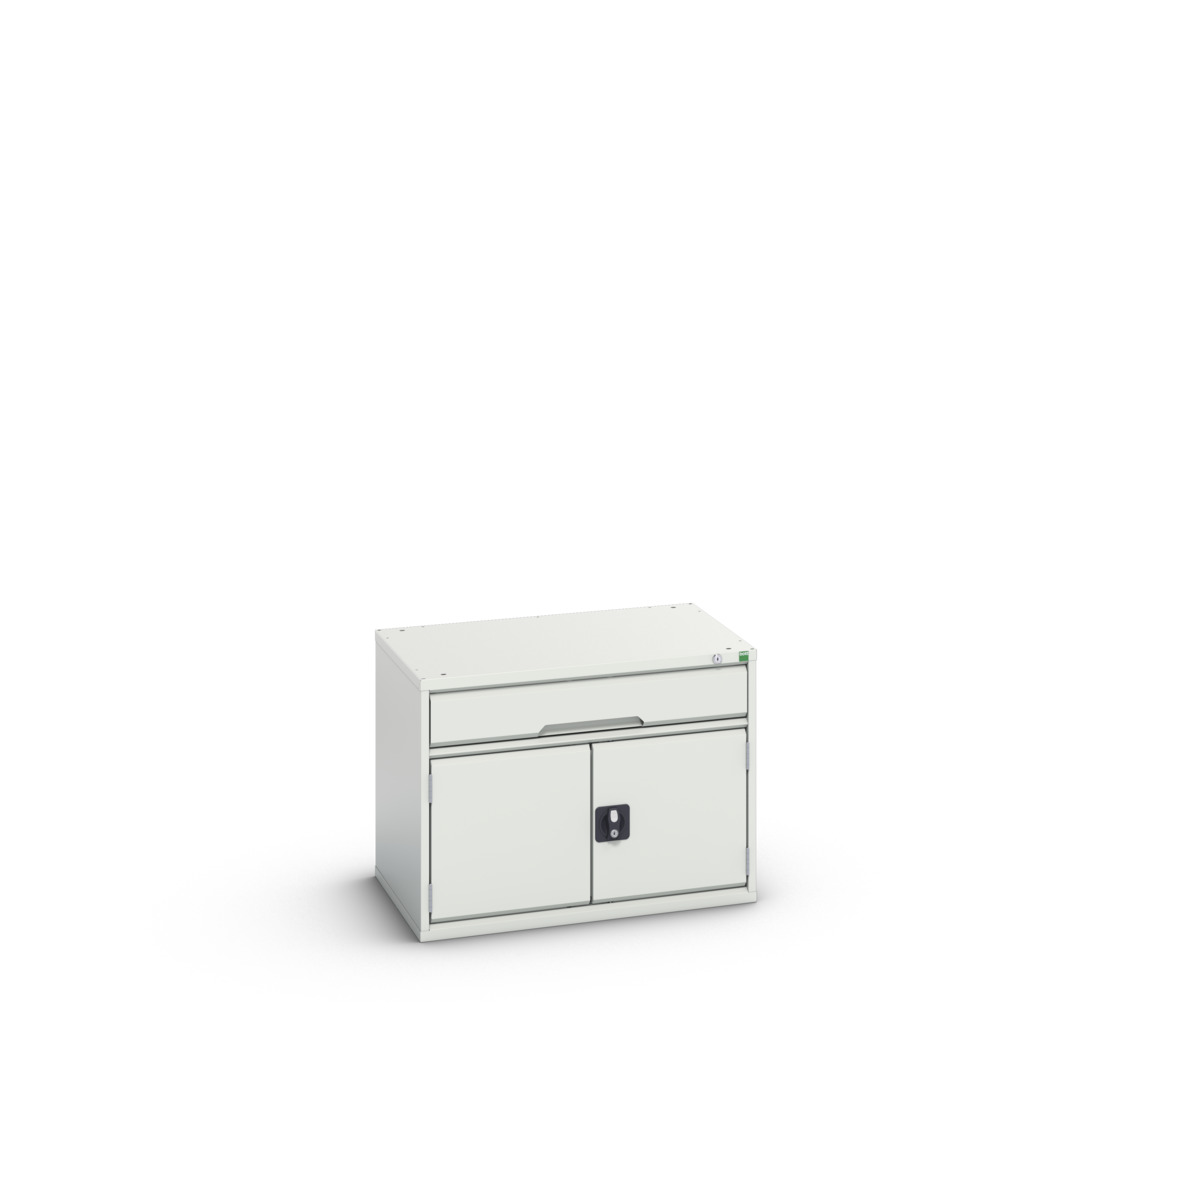 16925106.16 - verso drawer-door cabinet